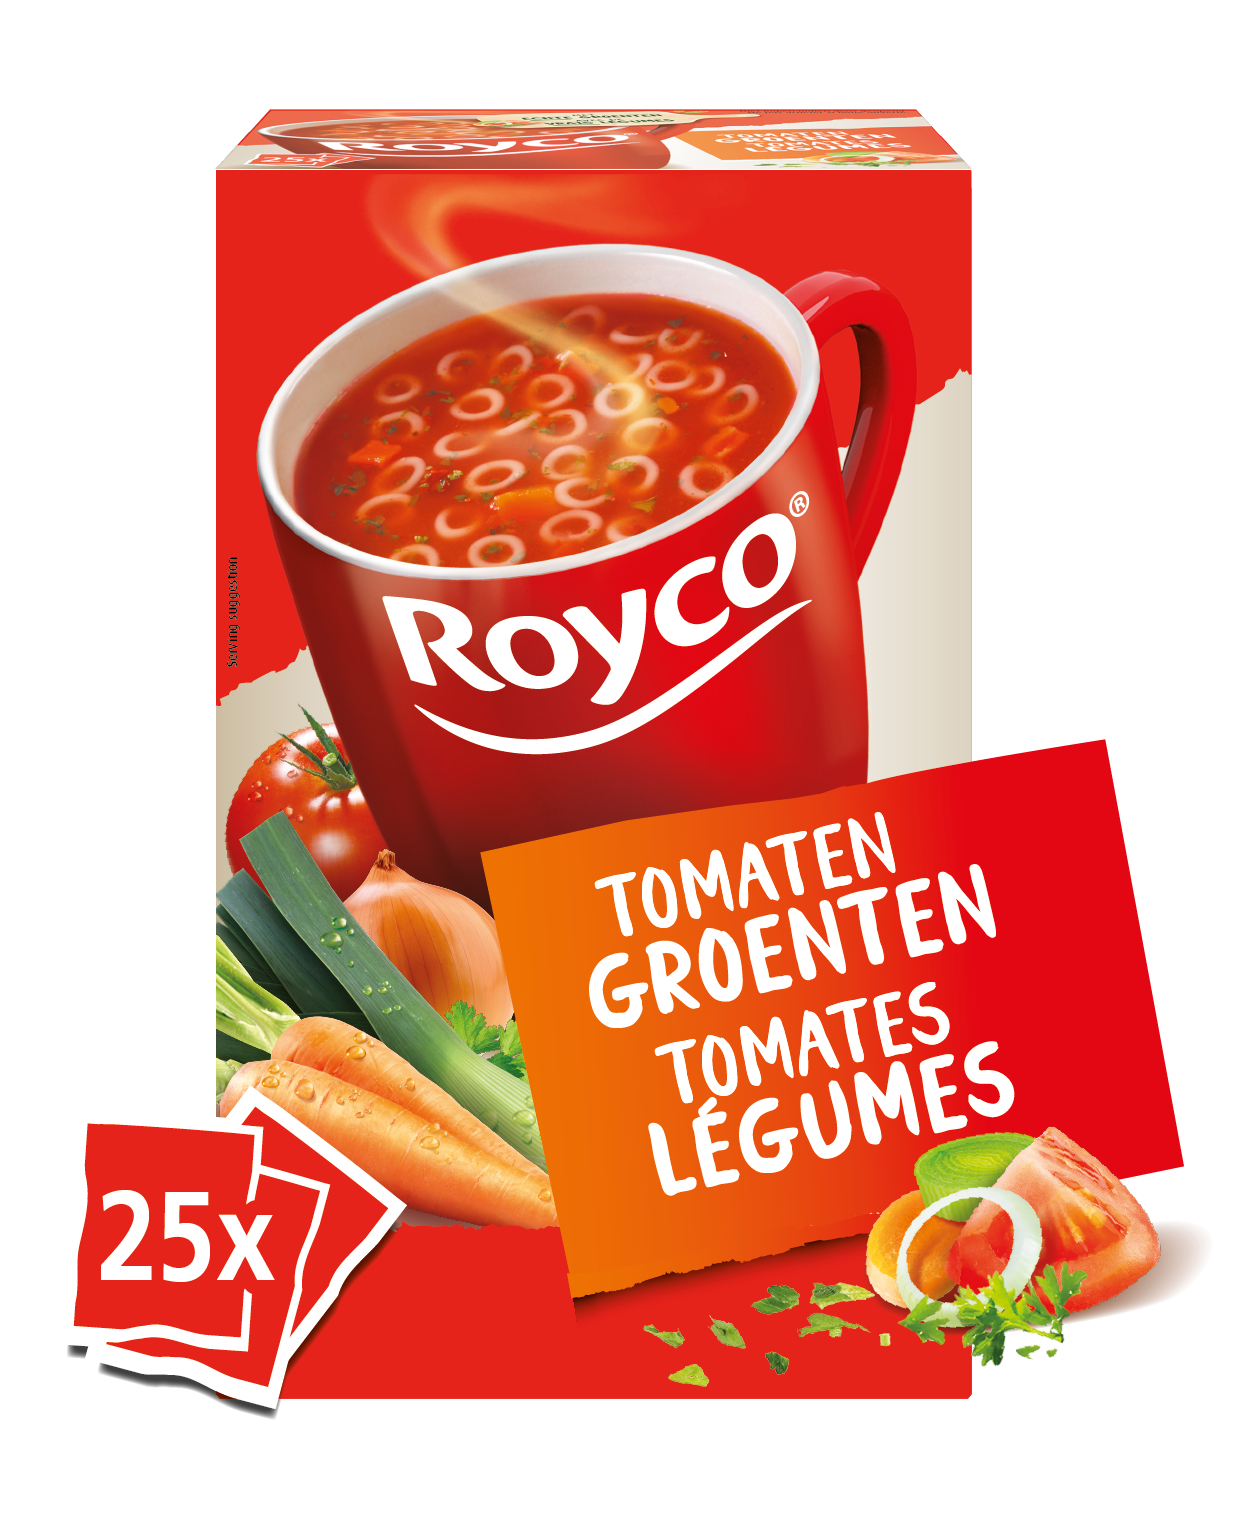 Royco classic tomaat groenten 